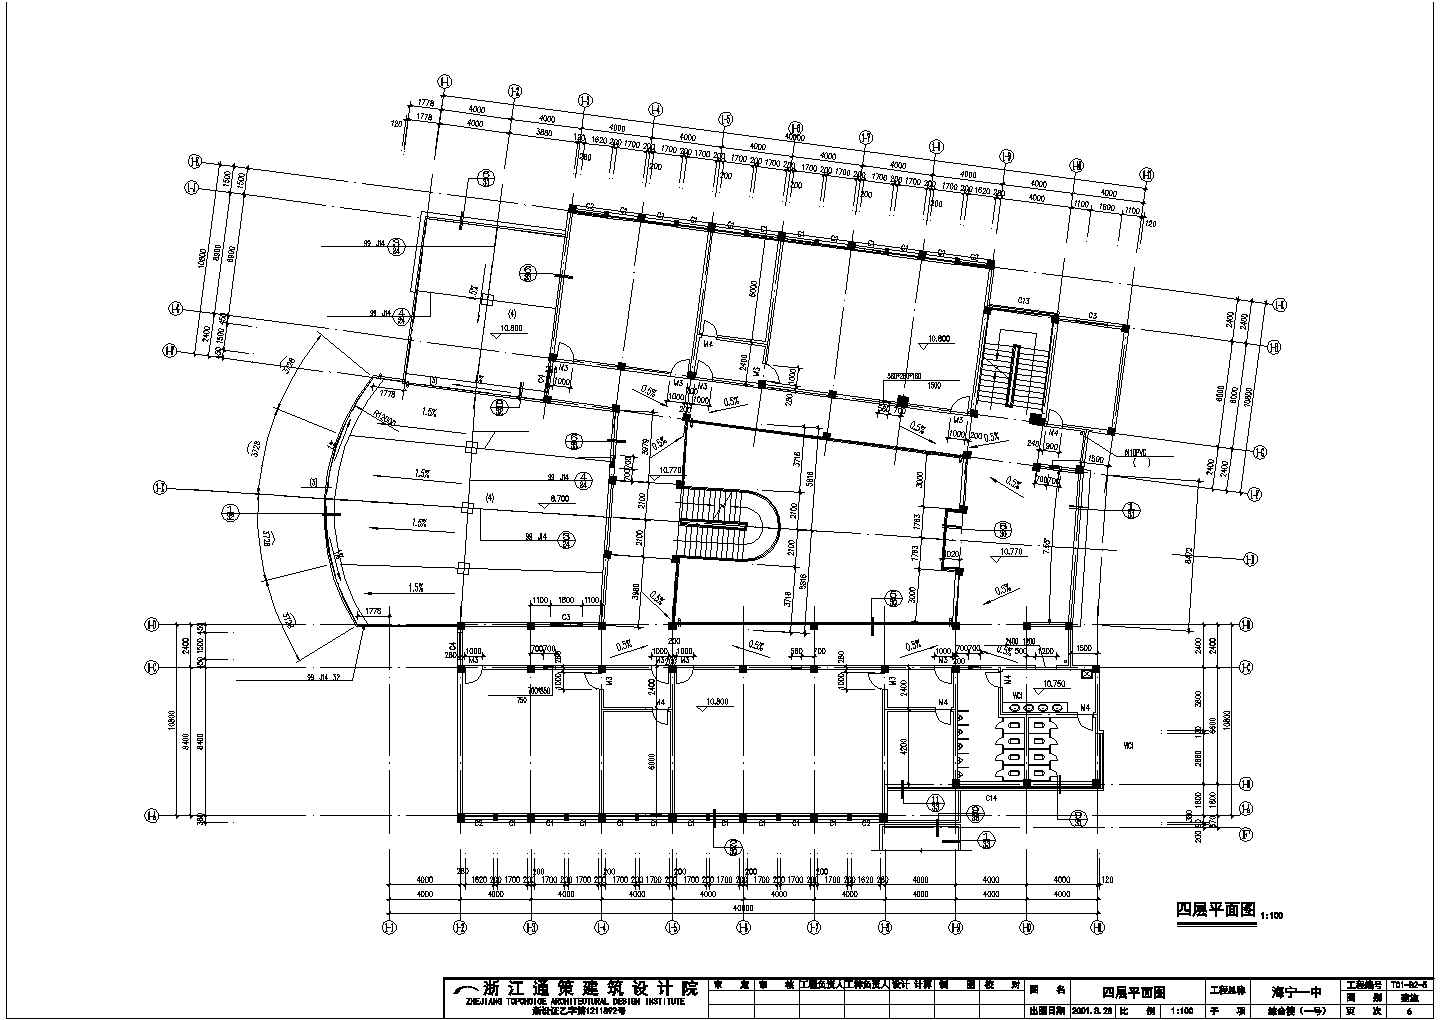 成都市某重点大学内部教学综合楼建筑设计CAD图纸